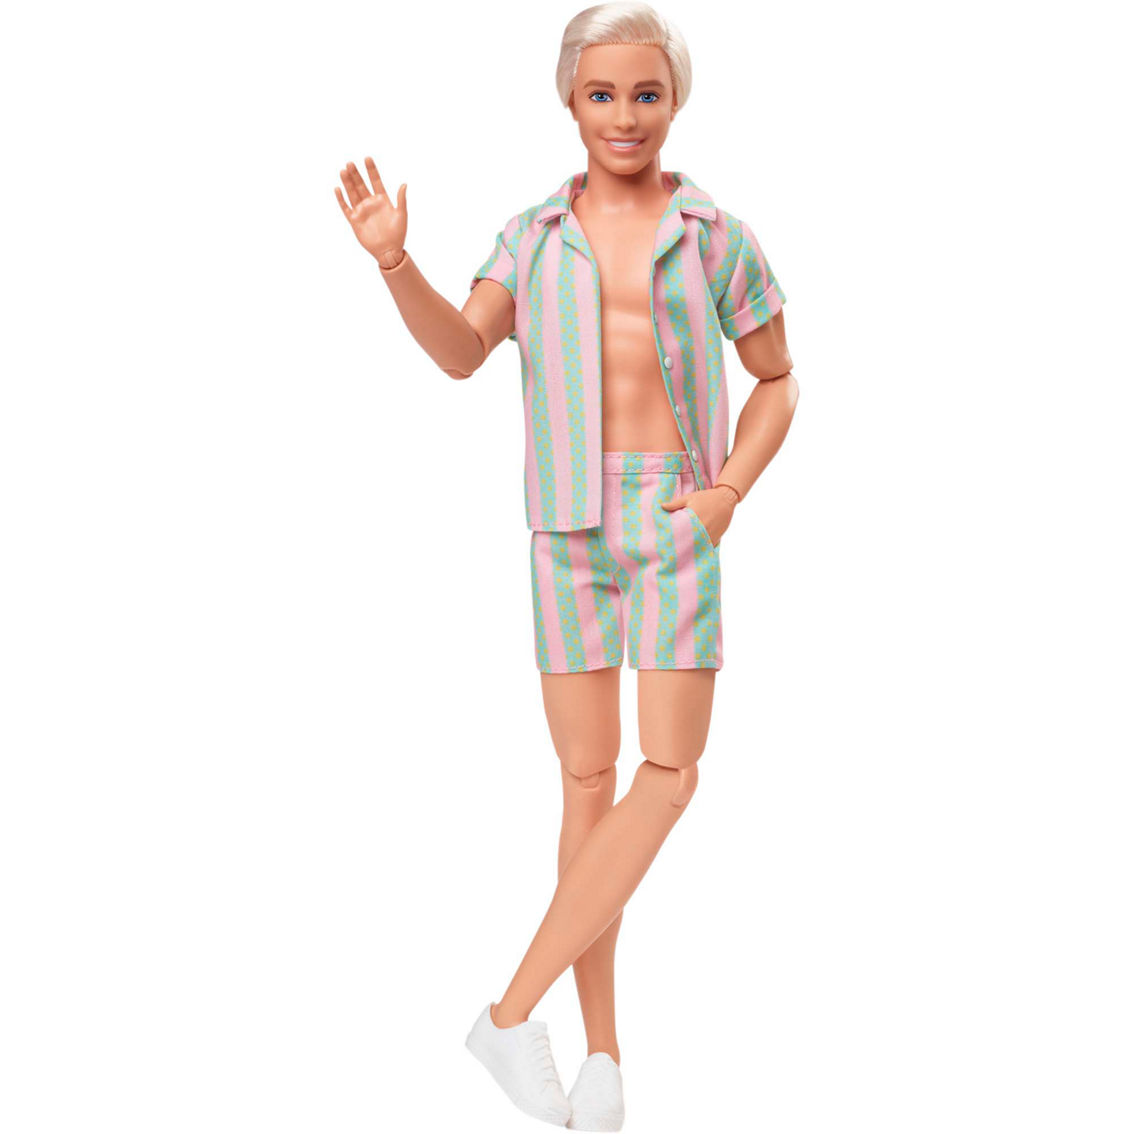 Mattel's New Ken Dolls Follow Barbie in Changing Body, Hair